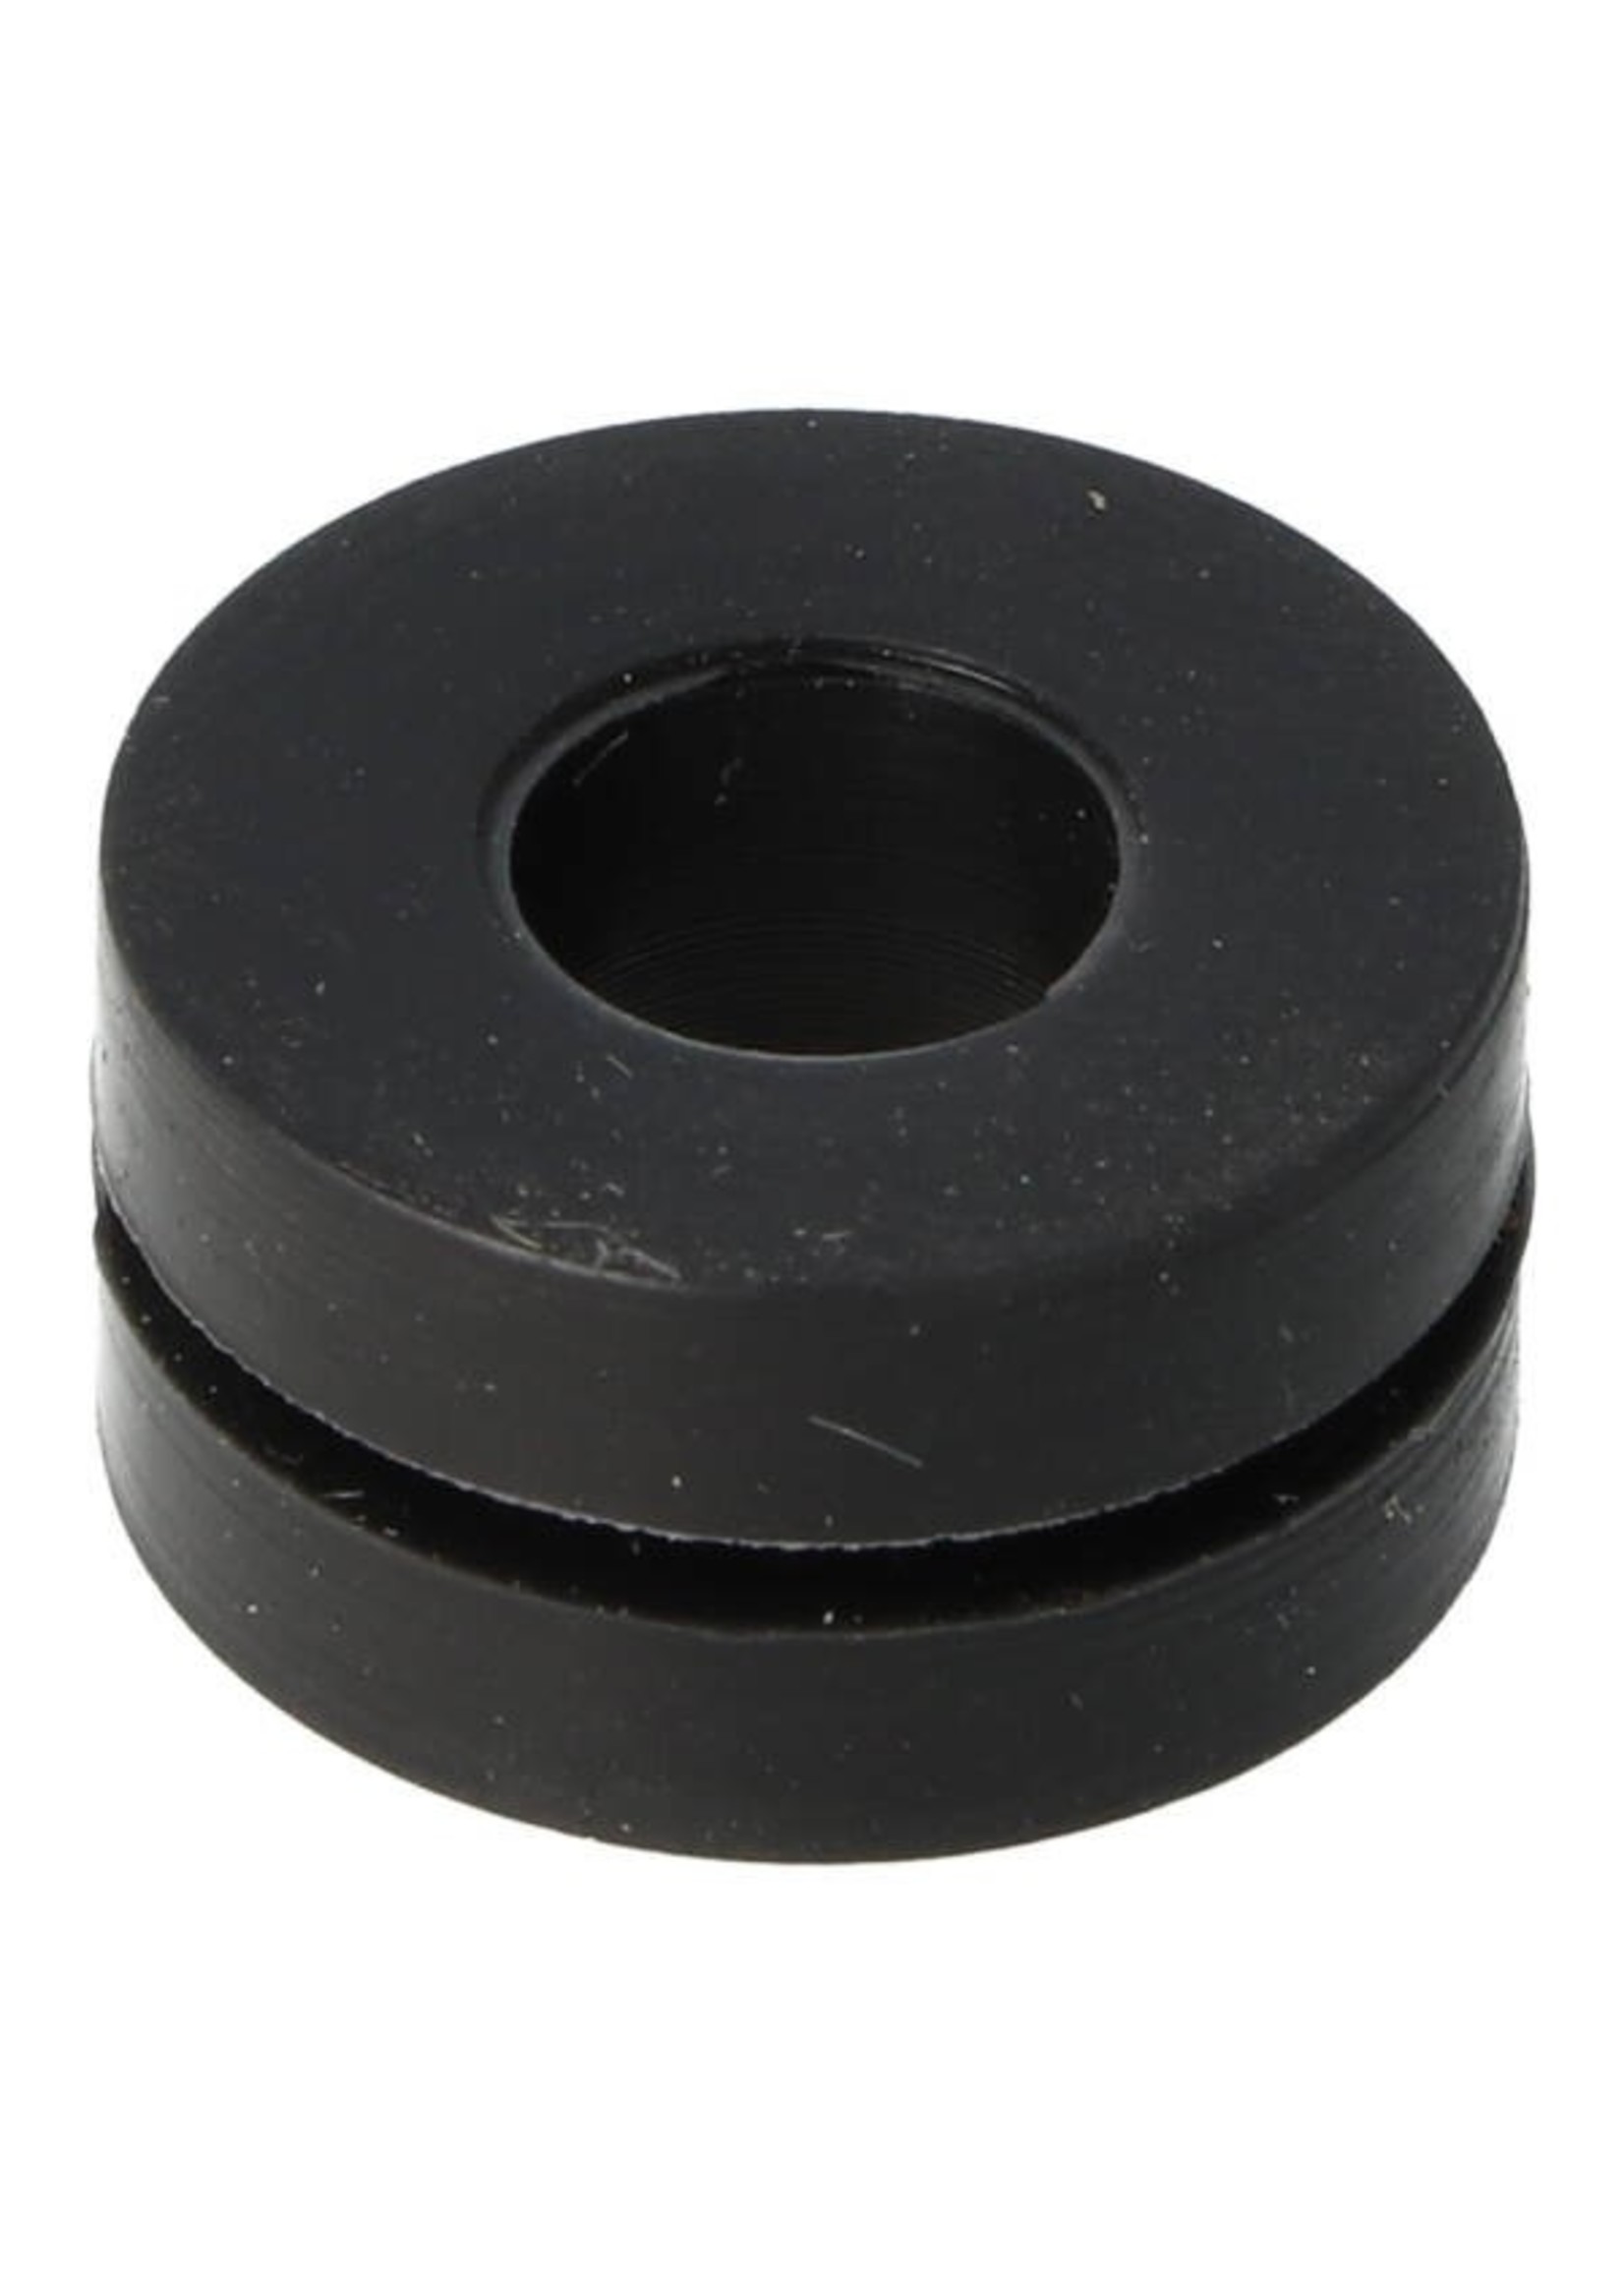 Kymco isolator rubber hitteschild kymco orig 18293-kece-900